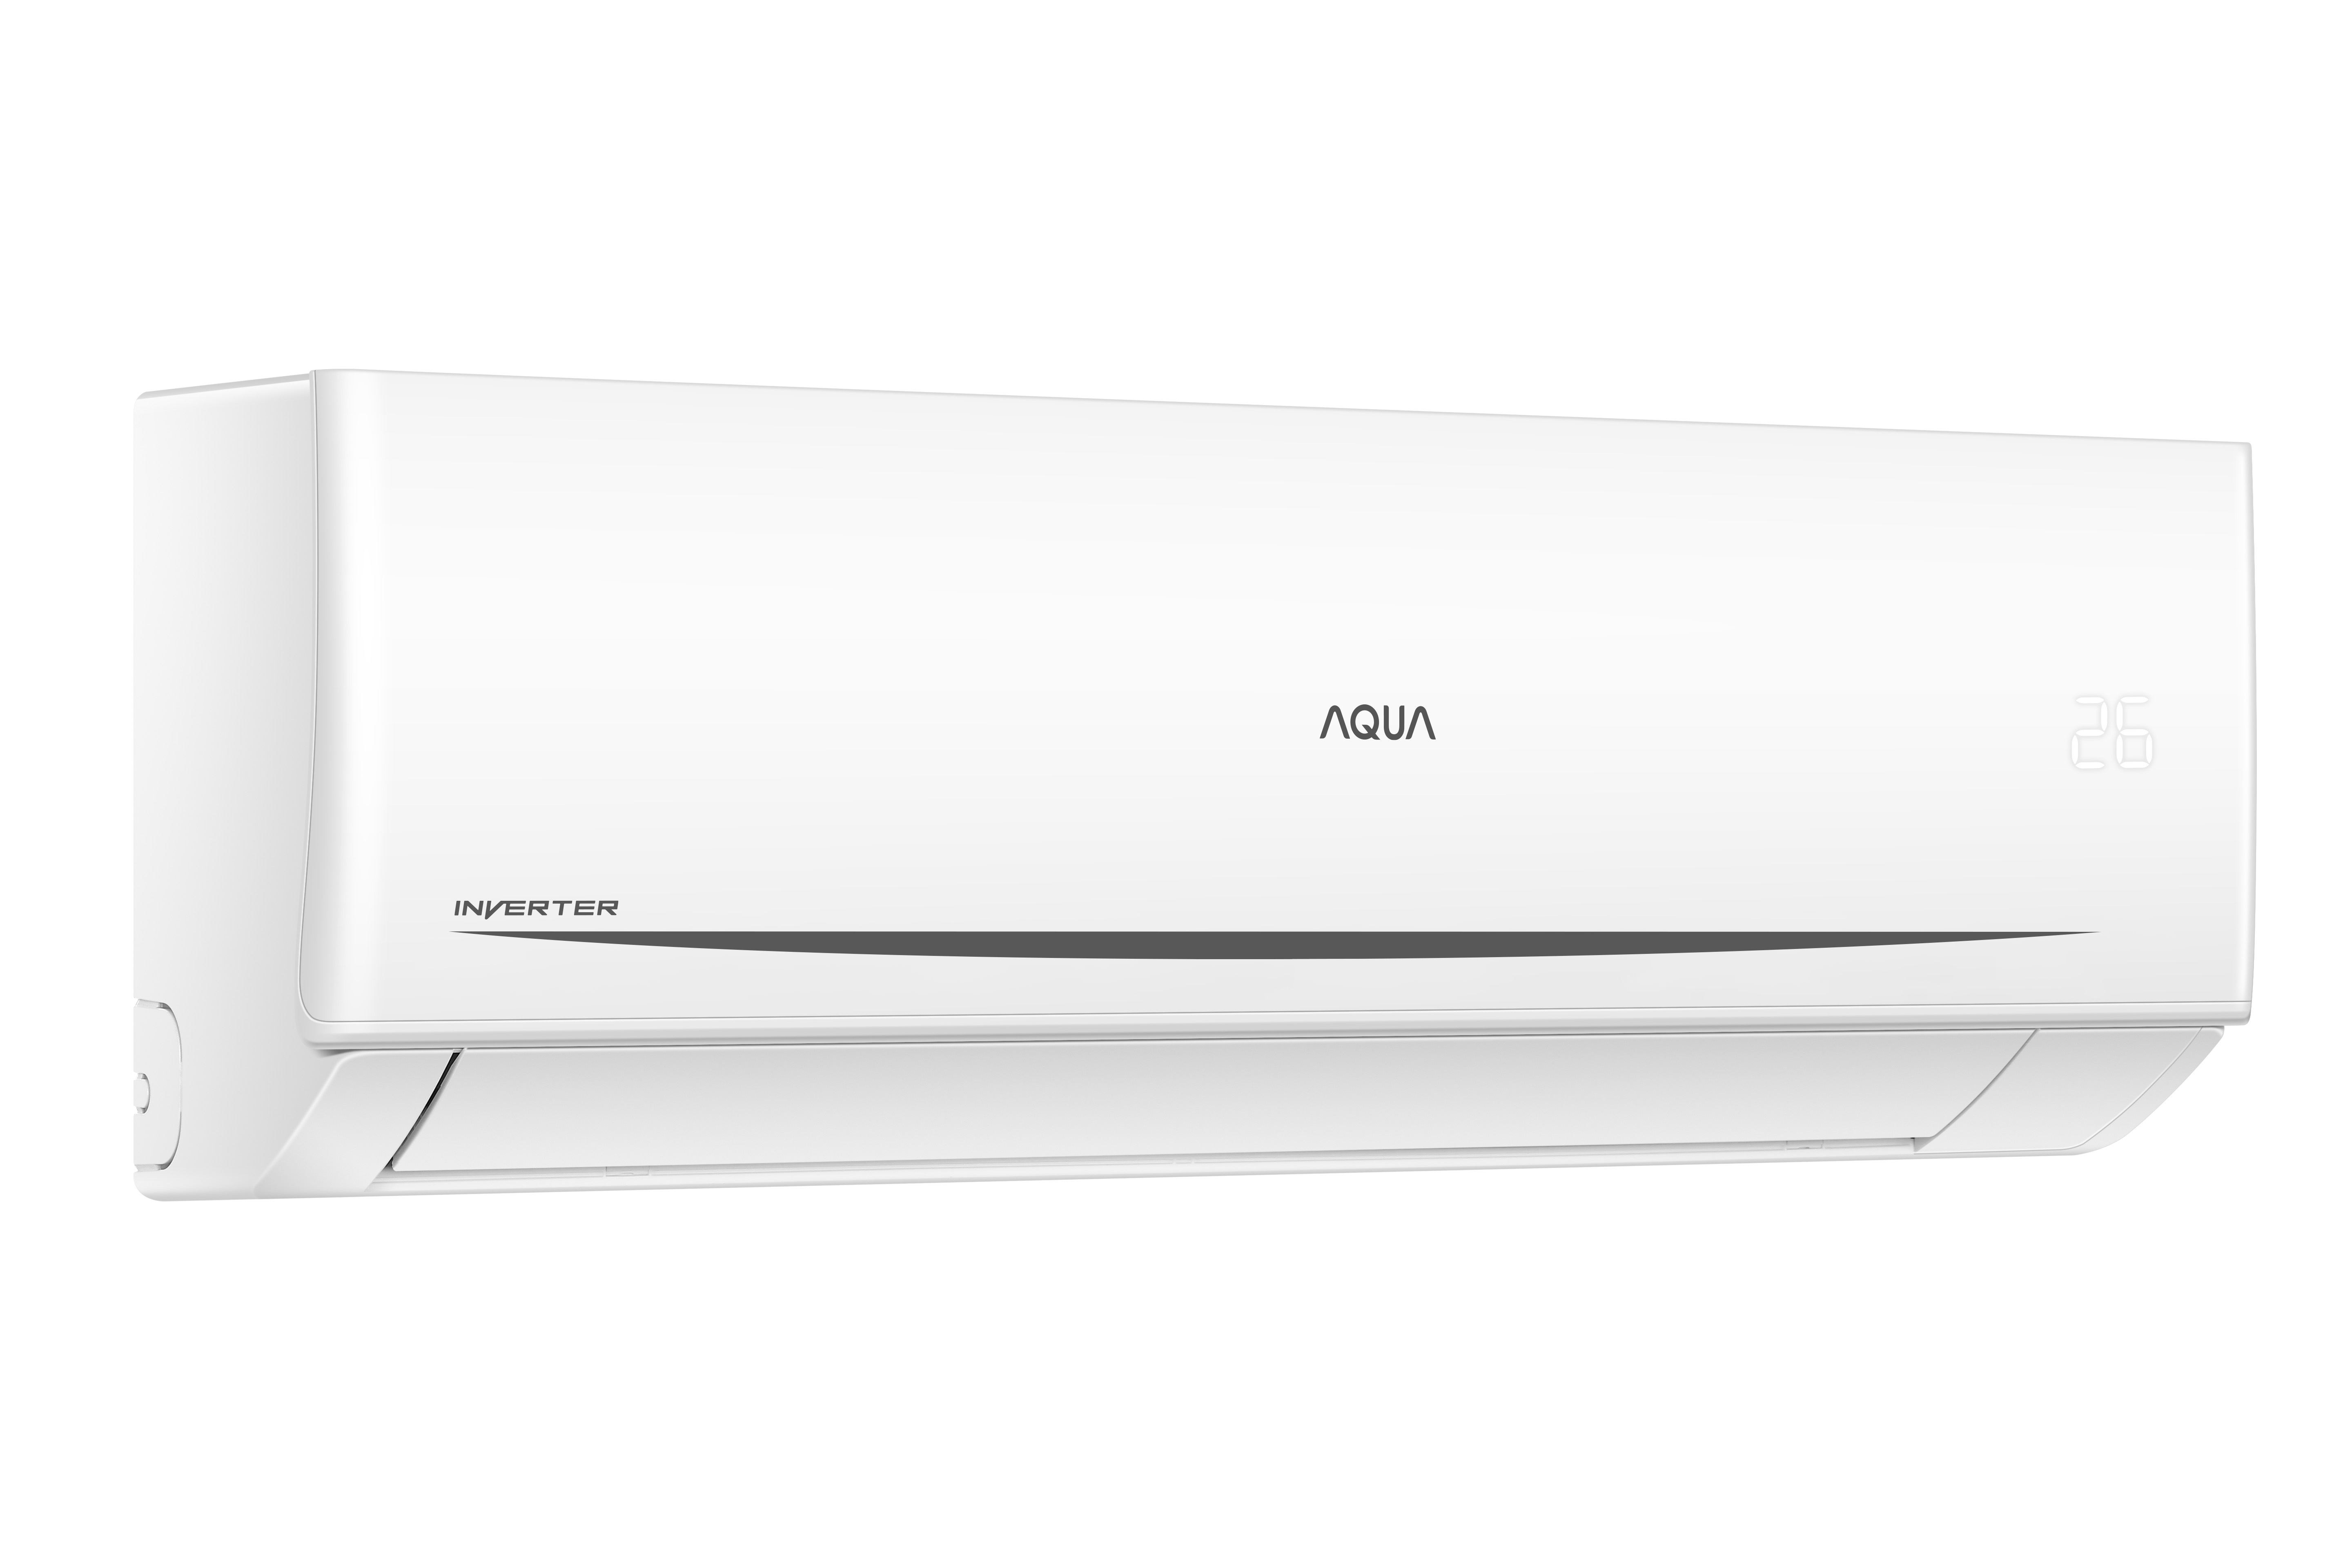 Máy lạnh Aqua 1 chiều Inverter 9000btu AQA-RV10QC2 - Giá tốt, tiết kiệm điện